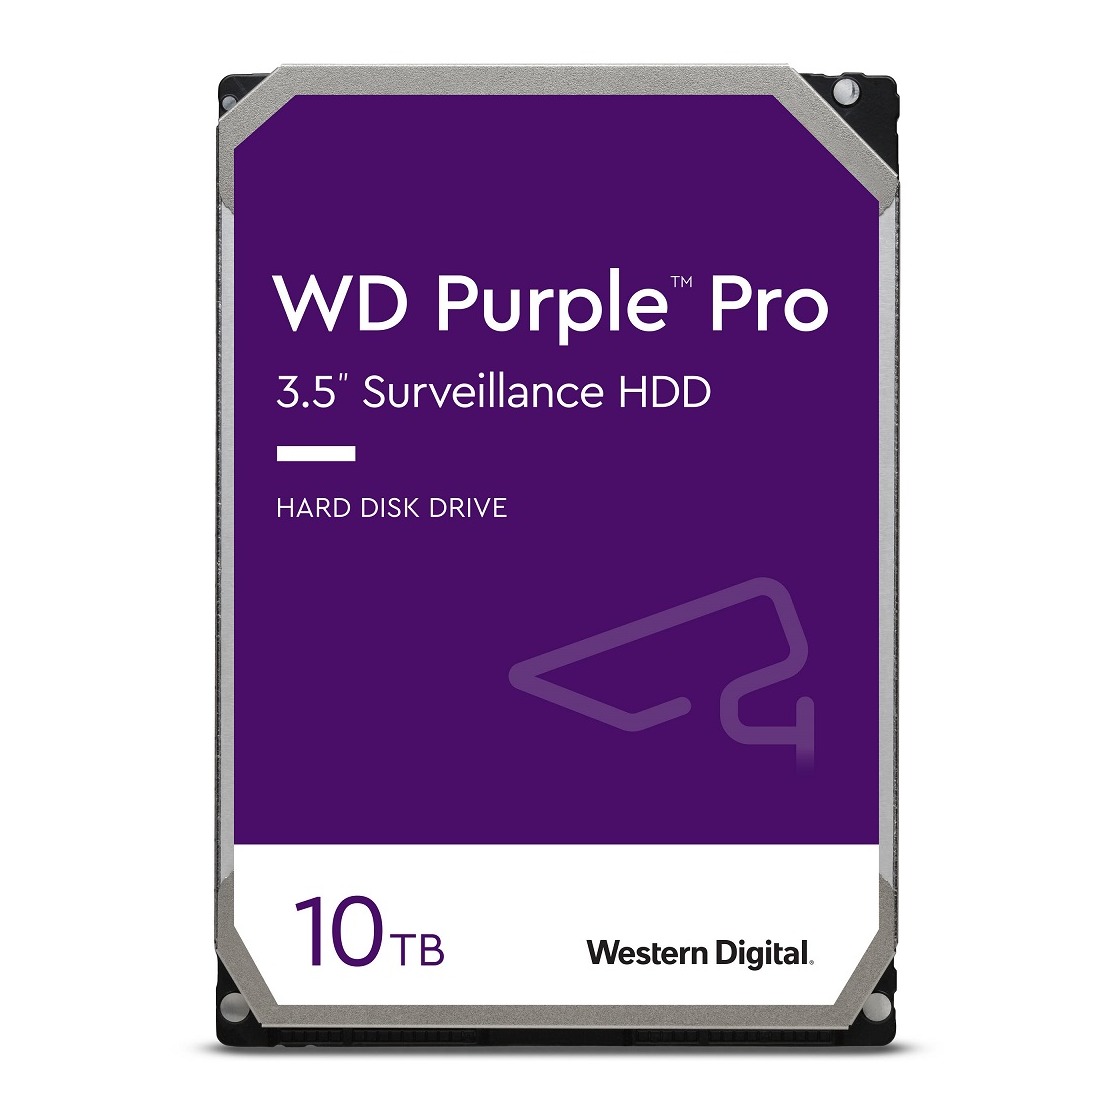 Western Digital 10TB WD Purple Pro Surveillance Internal Hard Drive HDD 